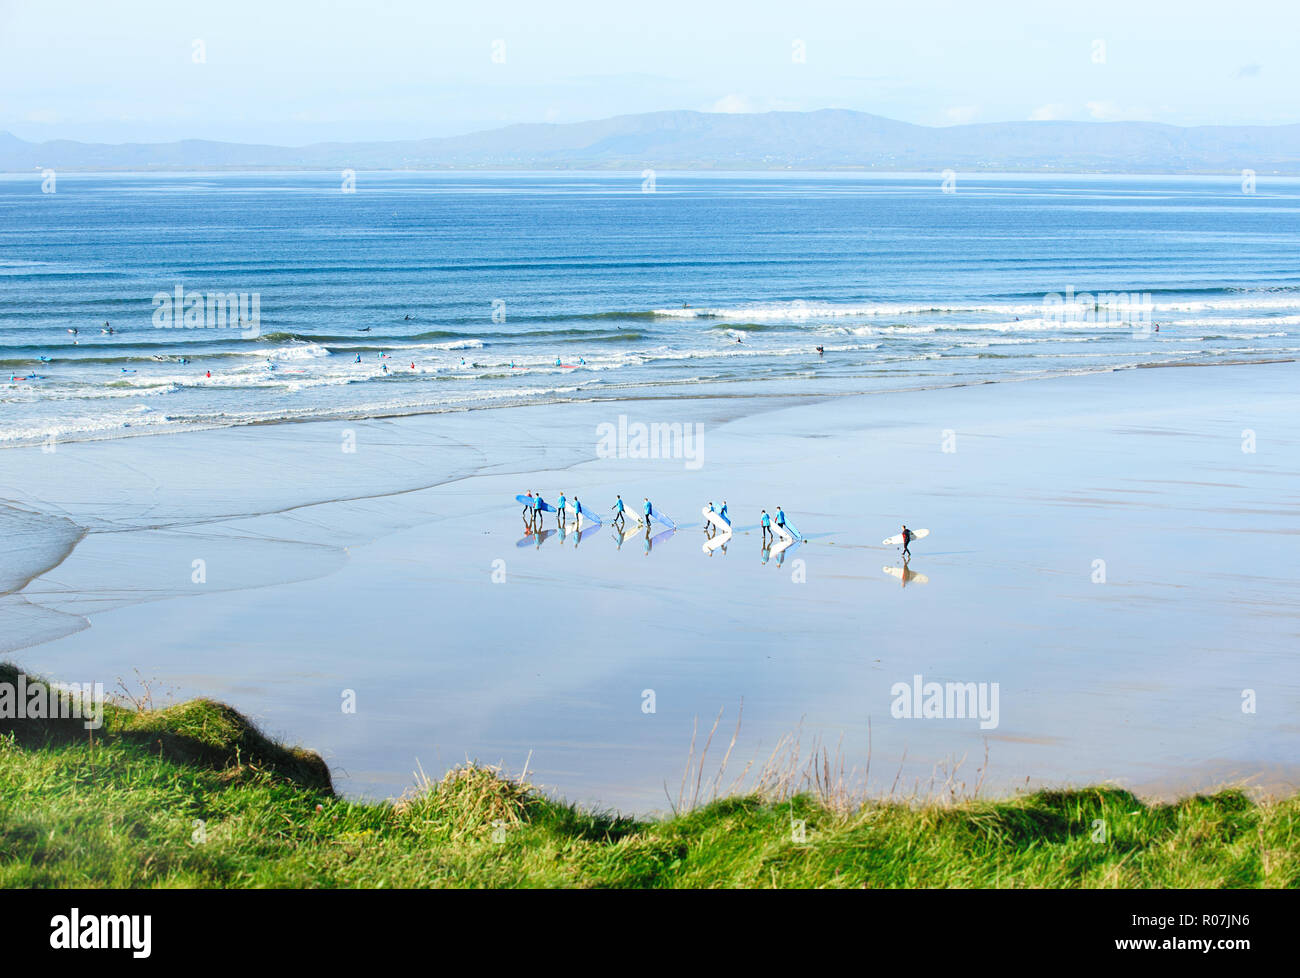 Magnifique plage de sable,Tullan Strand, qui attire les surfeurs de toute l'Irlande et l'Europe Banque D'Images